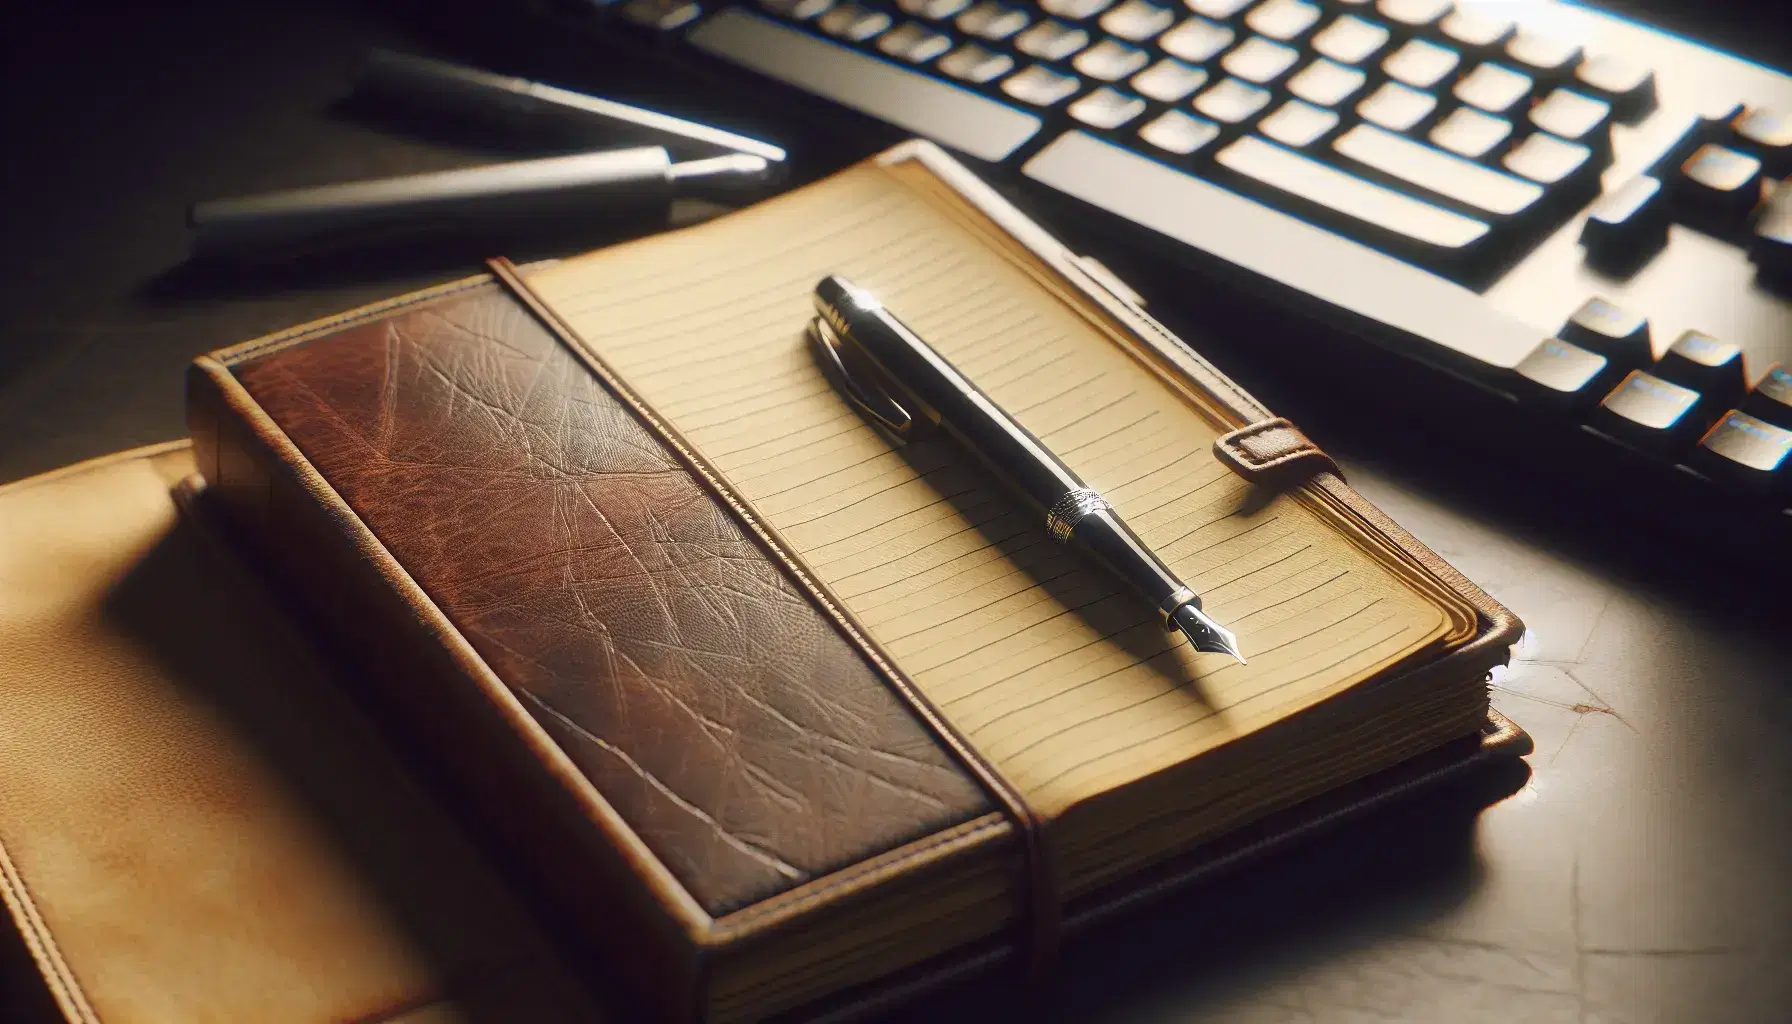 Diario antiguo de tapa dura marrón con esquinas desgastadas y páginas amarillentas junto a pluma fuente negra y teclado de computadora moderno desenfocado.